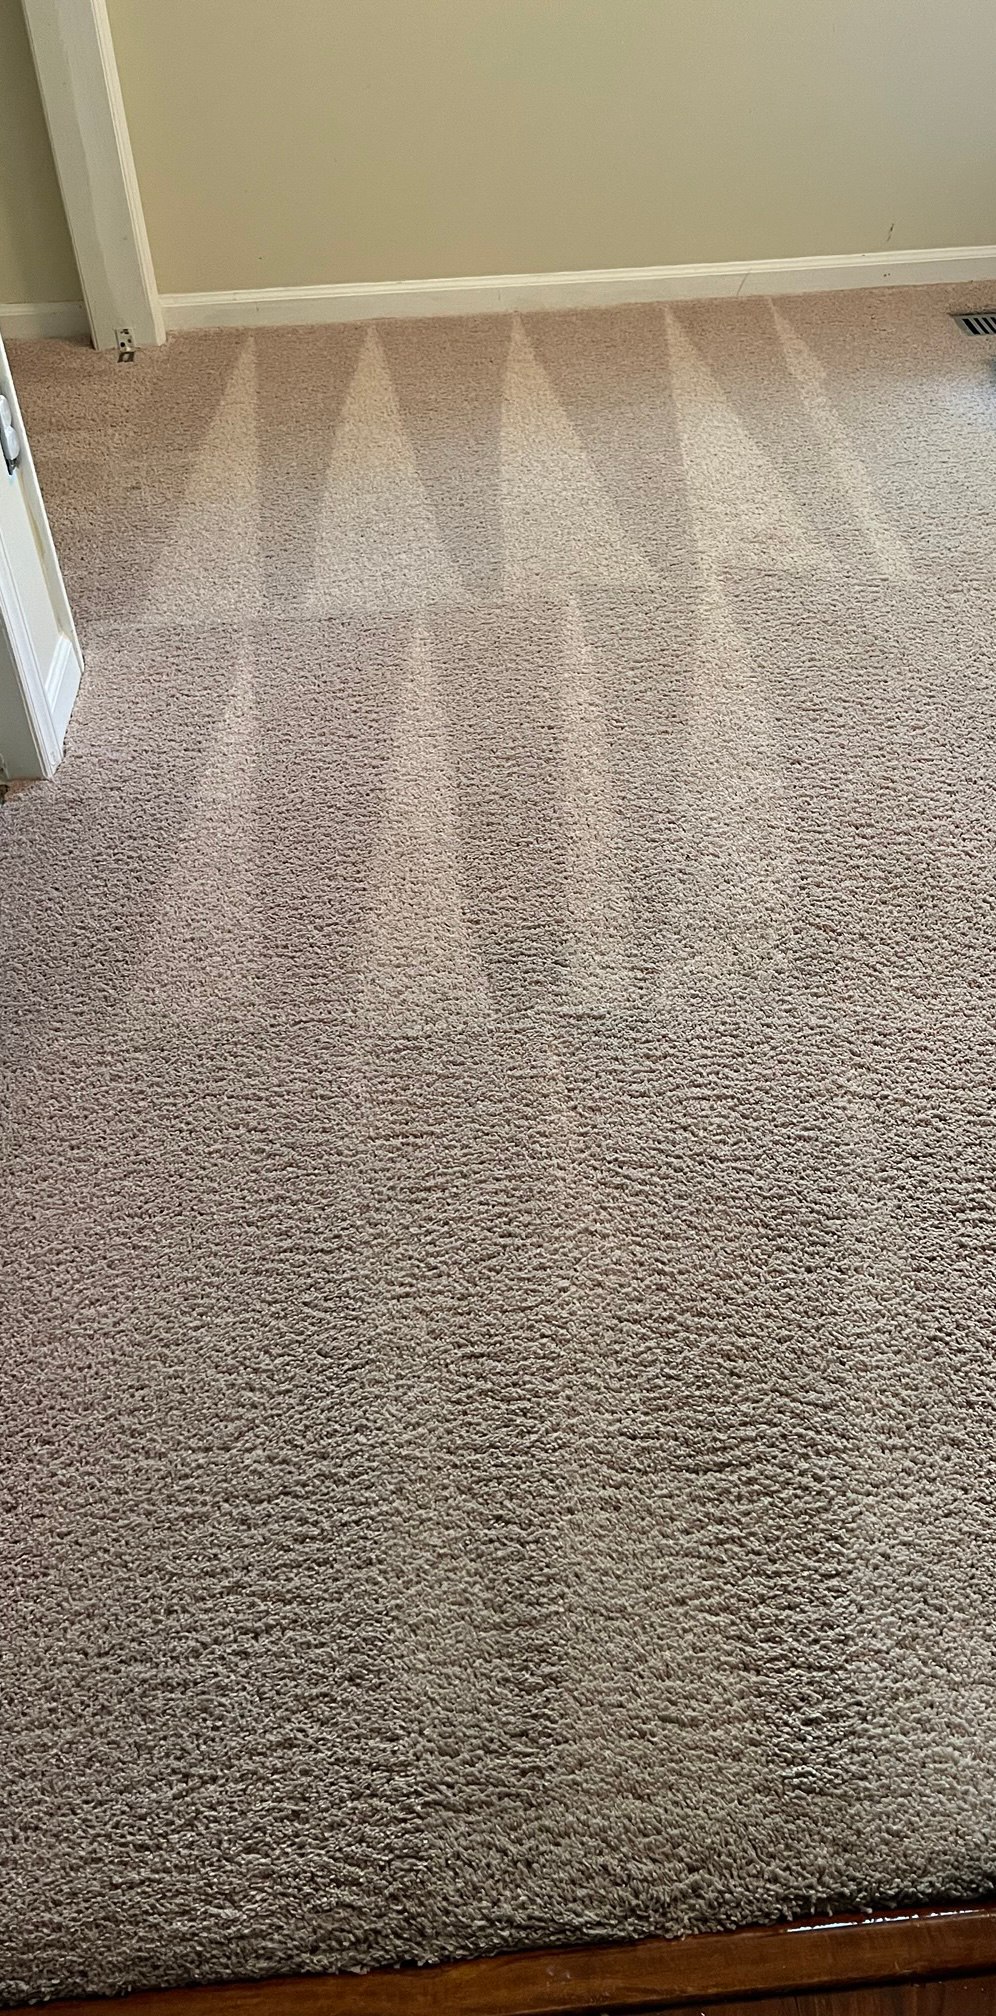 Carpet After